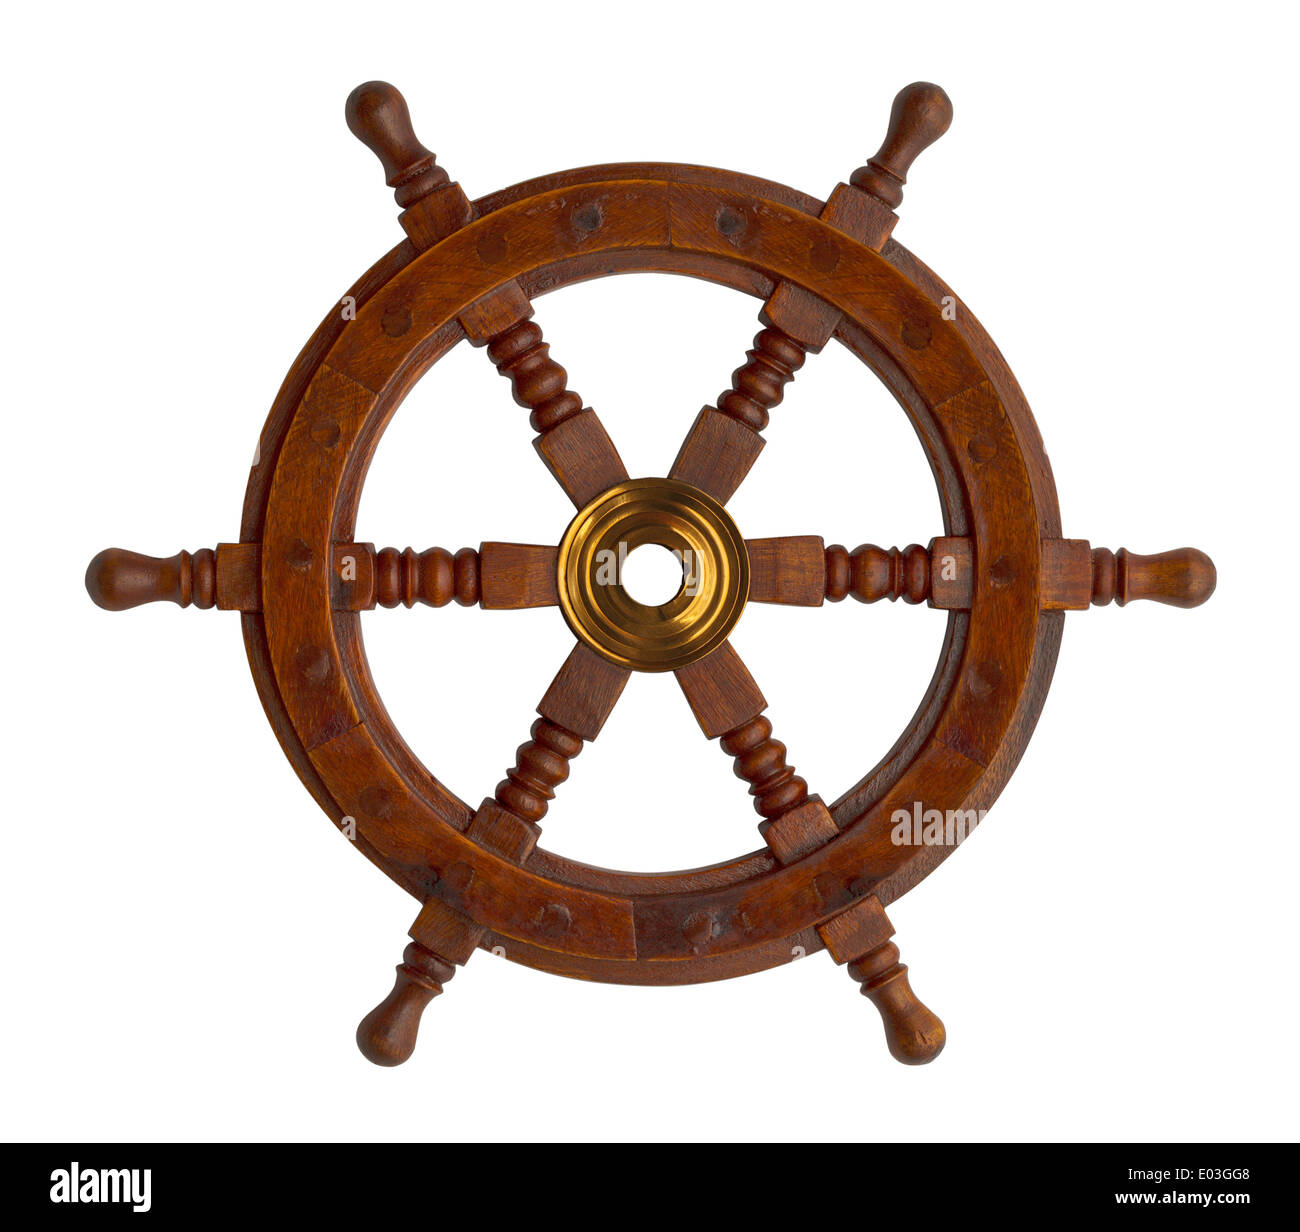 Wood Ship Wheel Isolated on White Background. Stock Photo